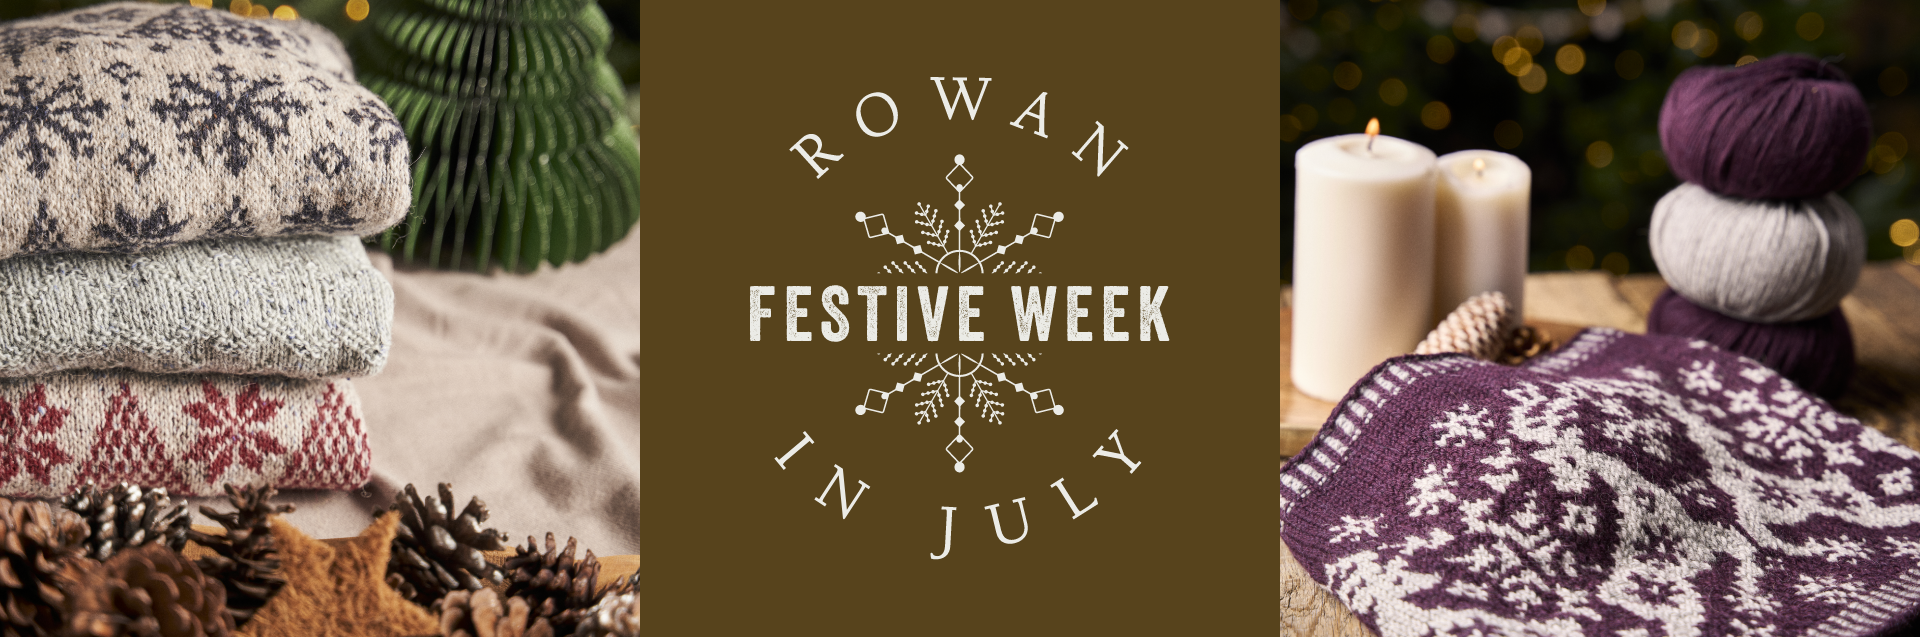 Festive Week in July banner